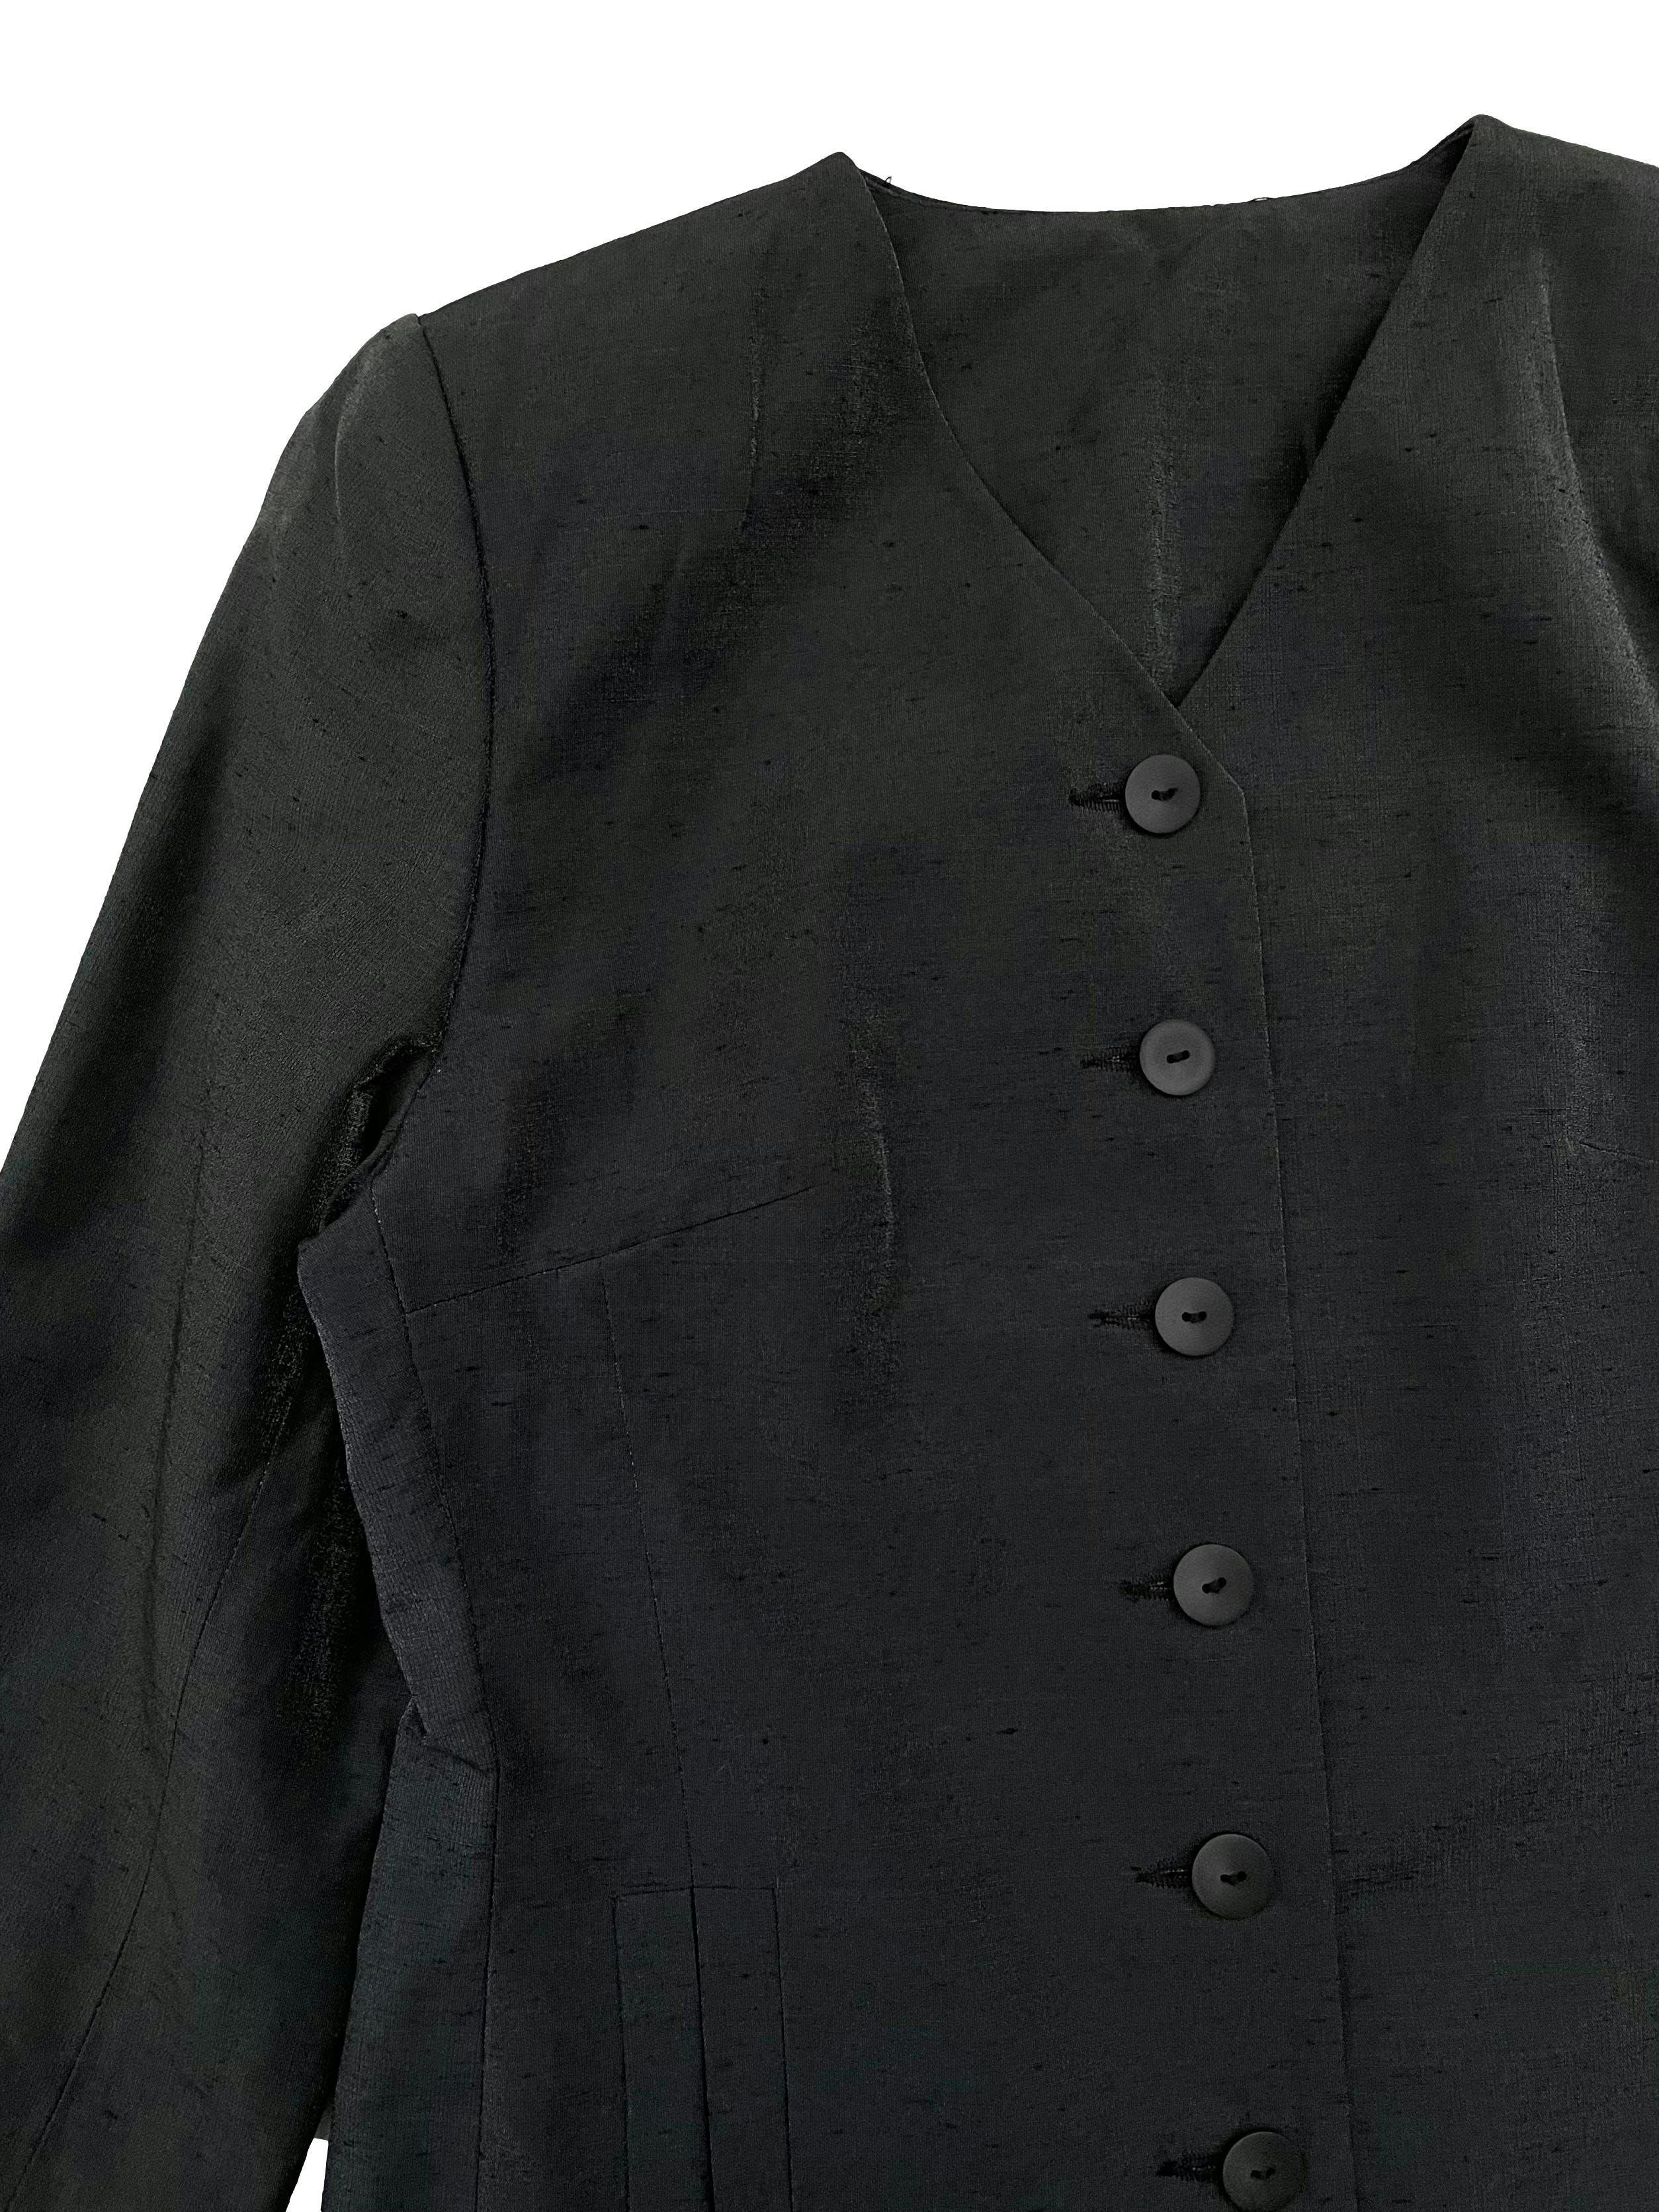 Saco Yessica negro saltinado, tela tipo lino, forrado, cuello en V con botones delanteros y bolsillos. Busto 100cm Largo 74cm